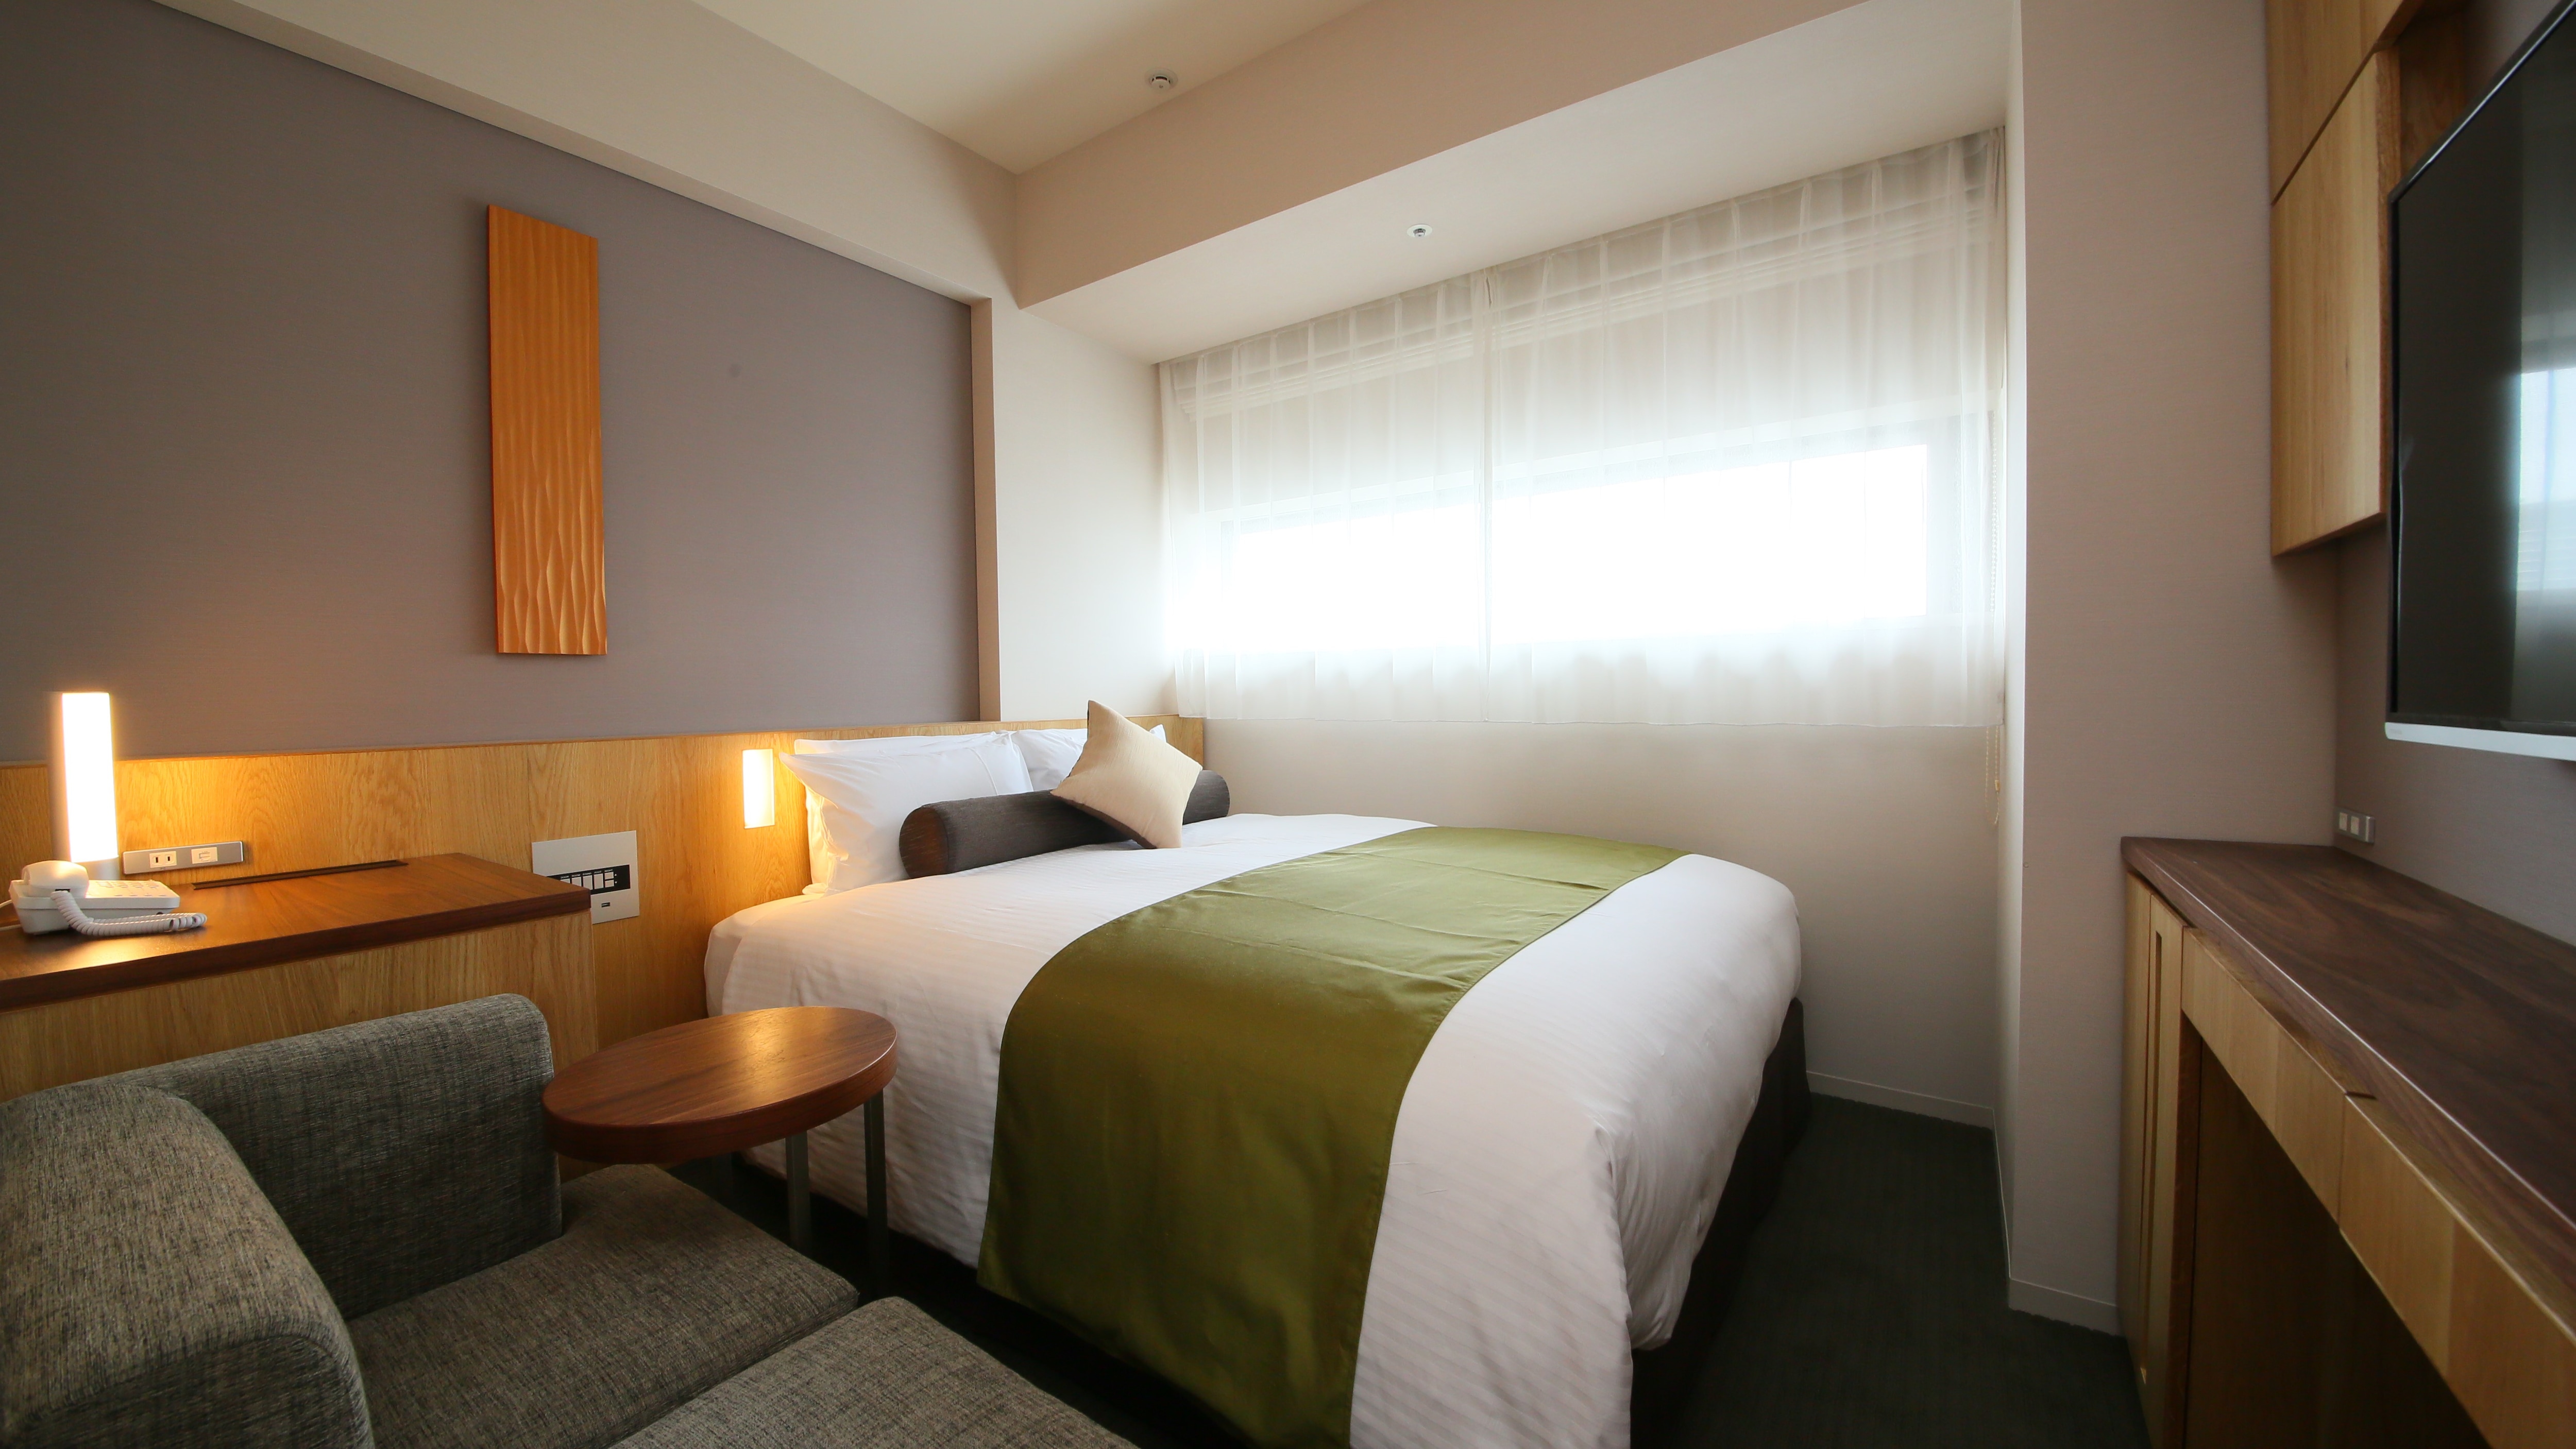 [Comfort Double Room] Area 20㎡ / Bed width 160cm